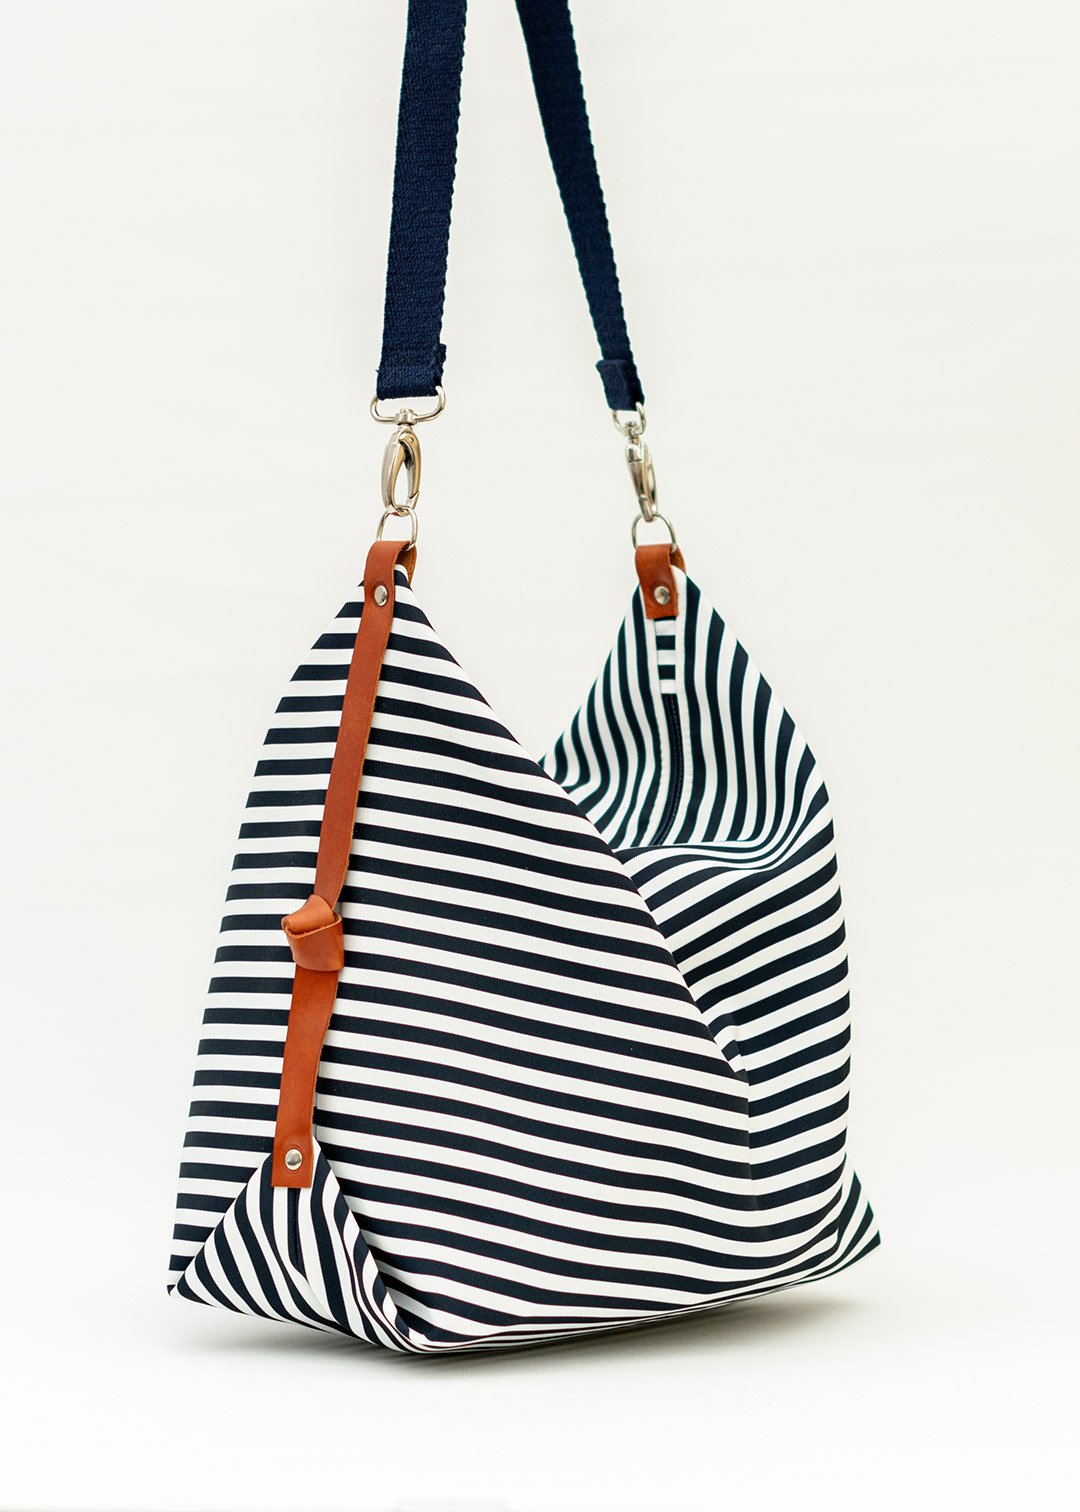 Marabara y sus bolsos a rayas marineras ideales para ir a la playa